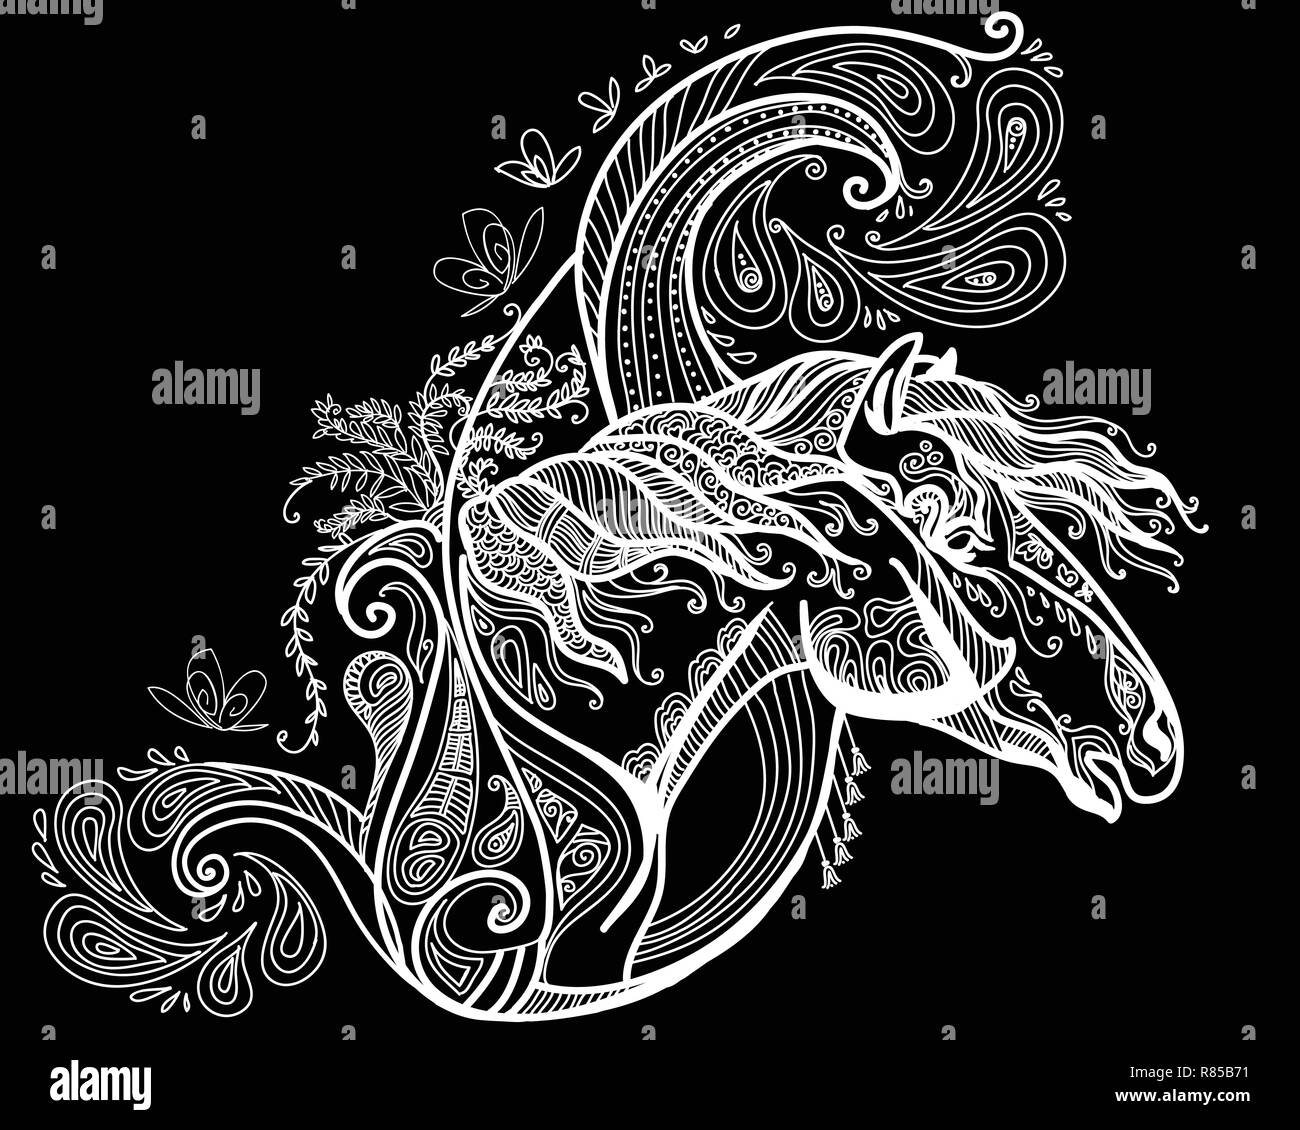 Vektor hand Zeichnung Abbildung zentangle Pferd in weißer Farbe auf schwarzem Hintergrund isoliert. Doodle Pferd Abbildung mit pflanzlichen Elementen. Farbgebung Stock Vektor